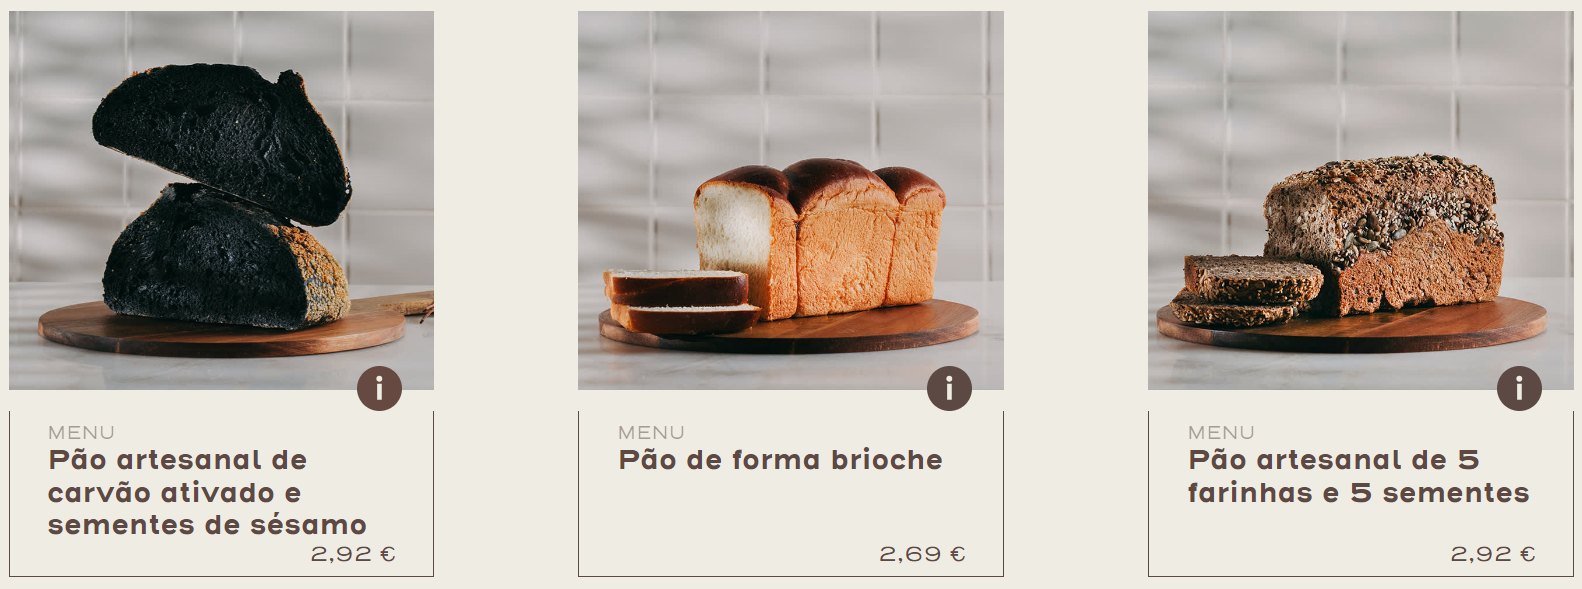 Menu pães padaria - A padaria Portuguesa - BVML